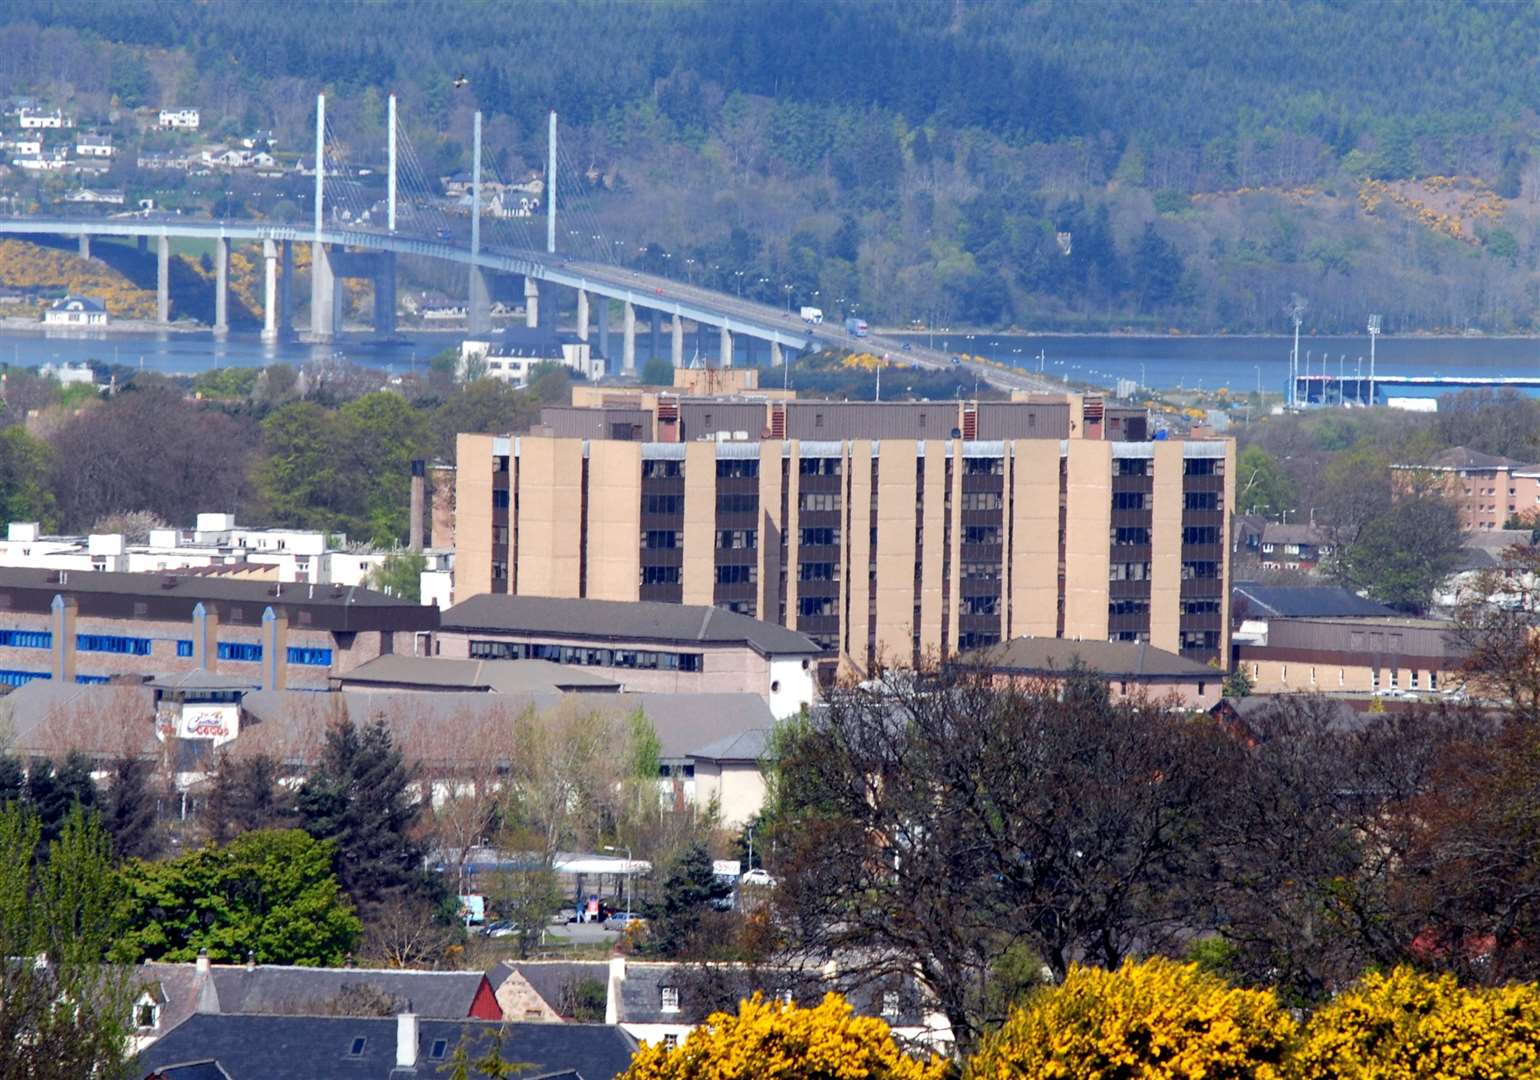 Raigmore Hospital in Inverness